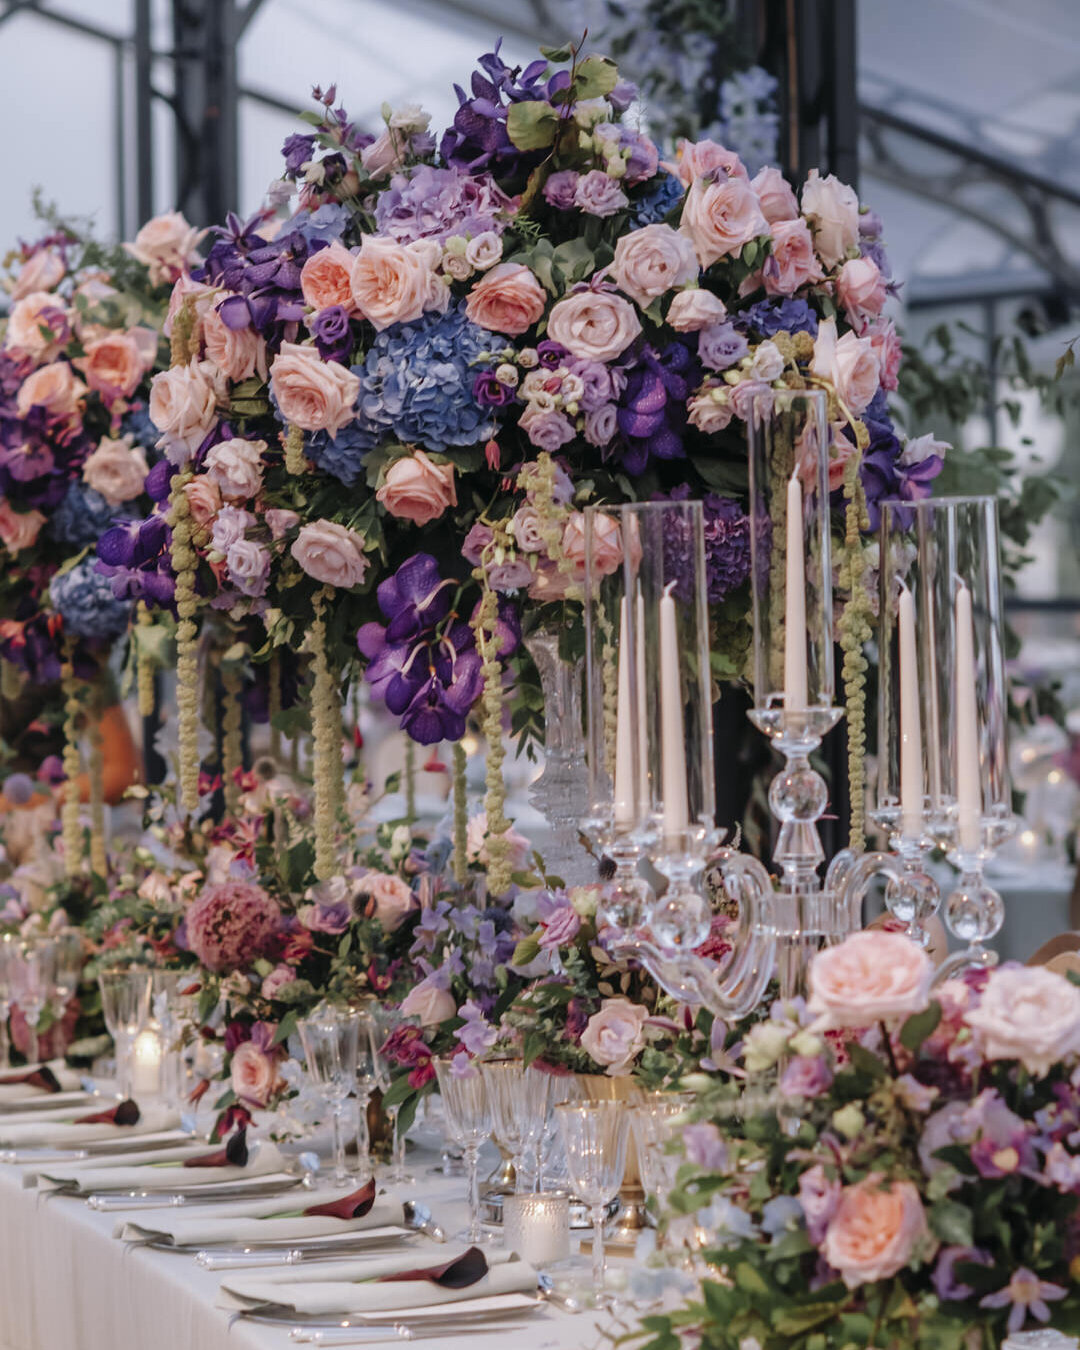 Paris Destination Wedding at Chateau de Chantilly by Alejandra Poupel Events close up flowers dinner table 8 